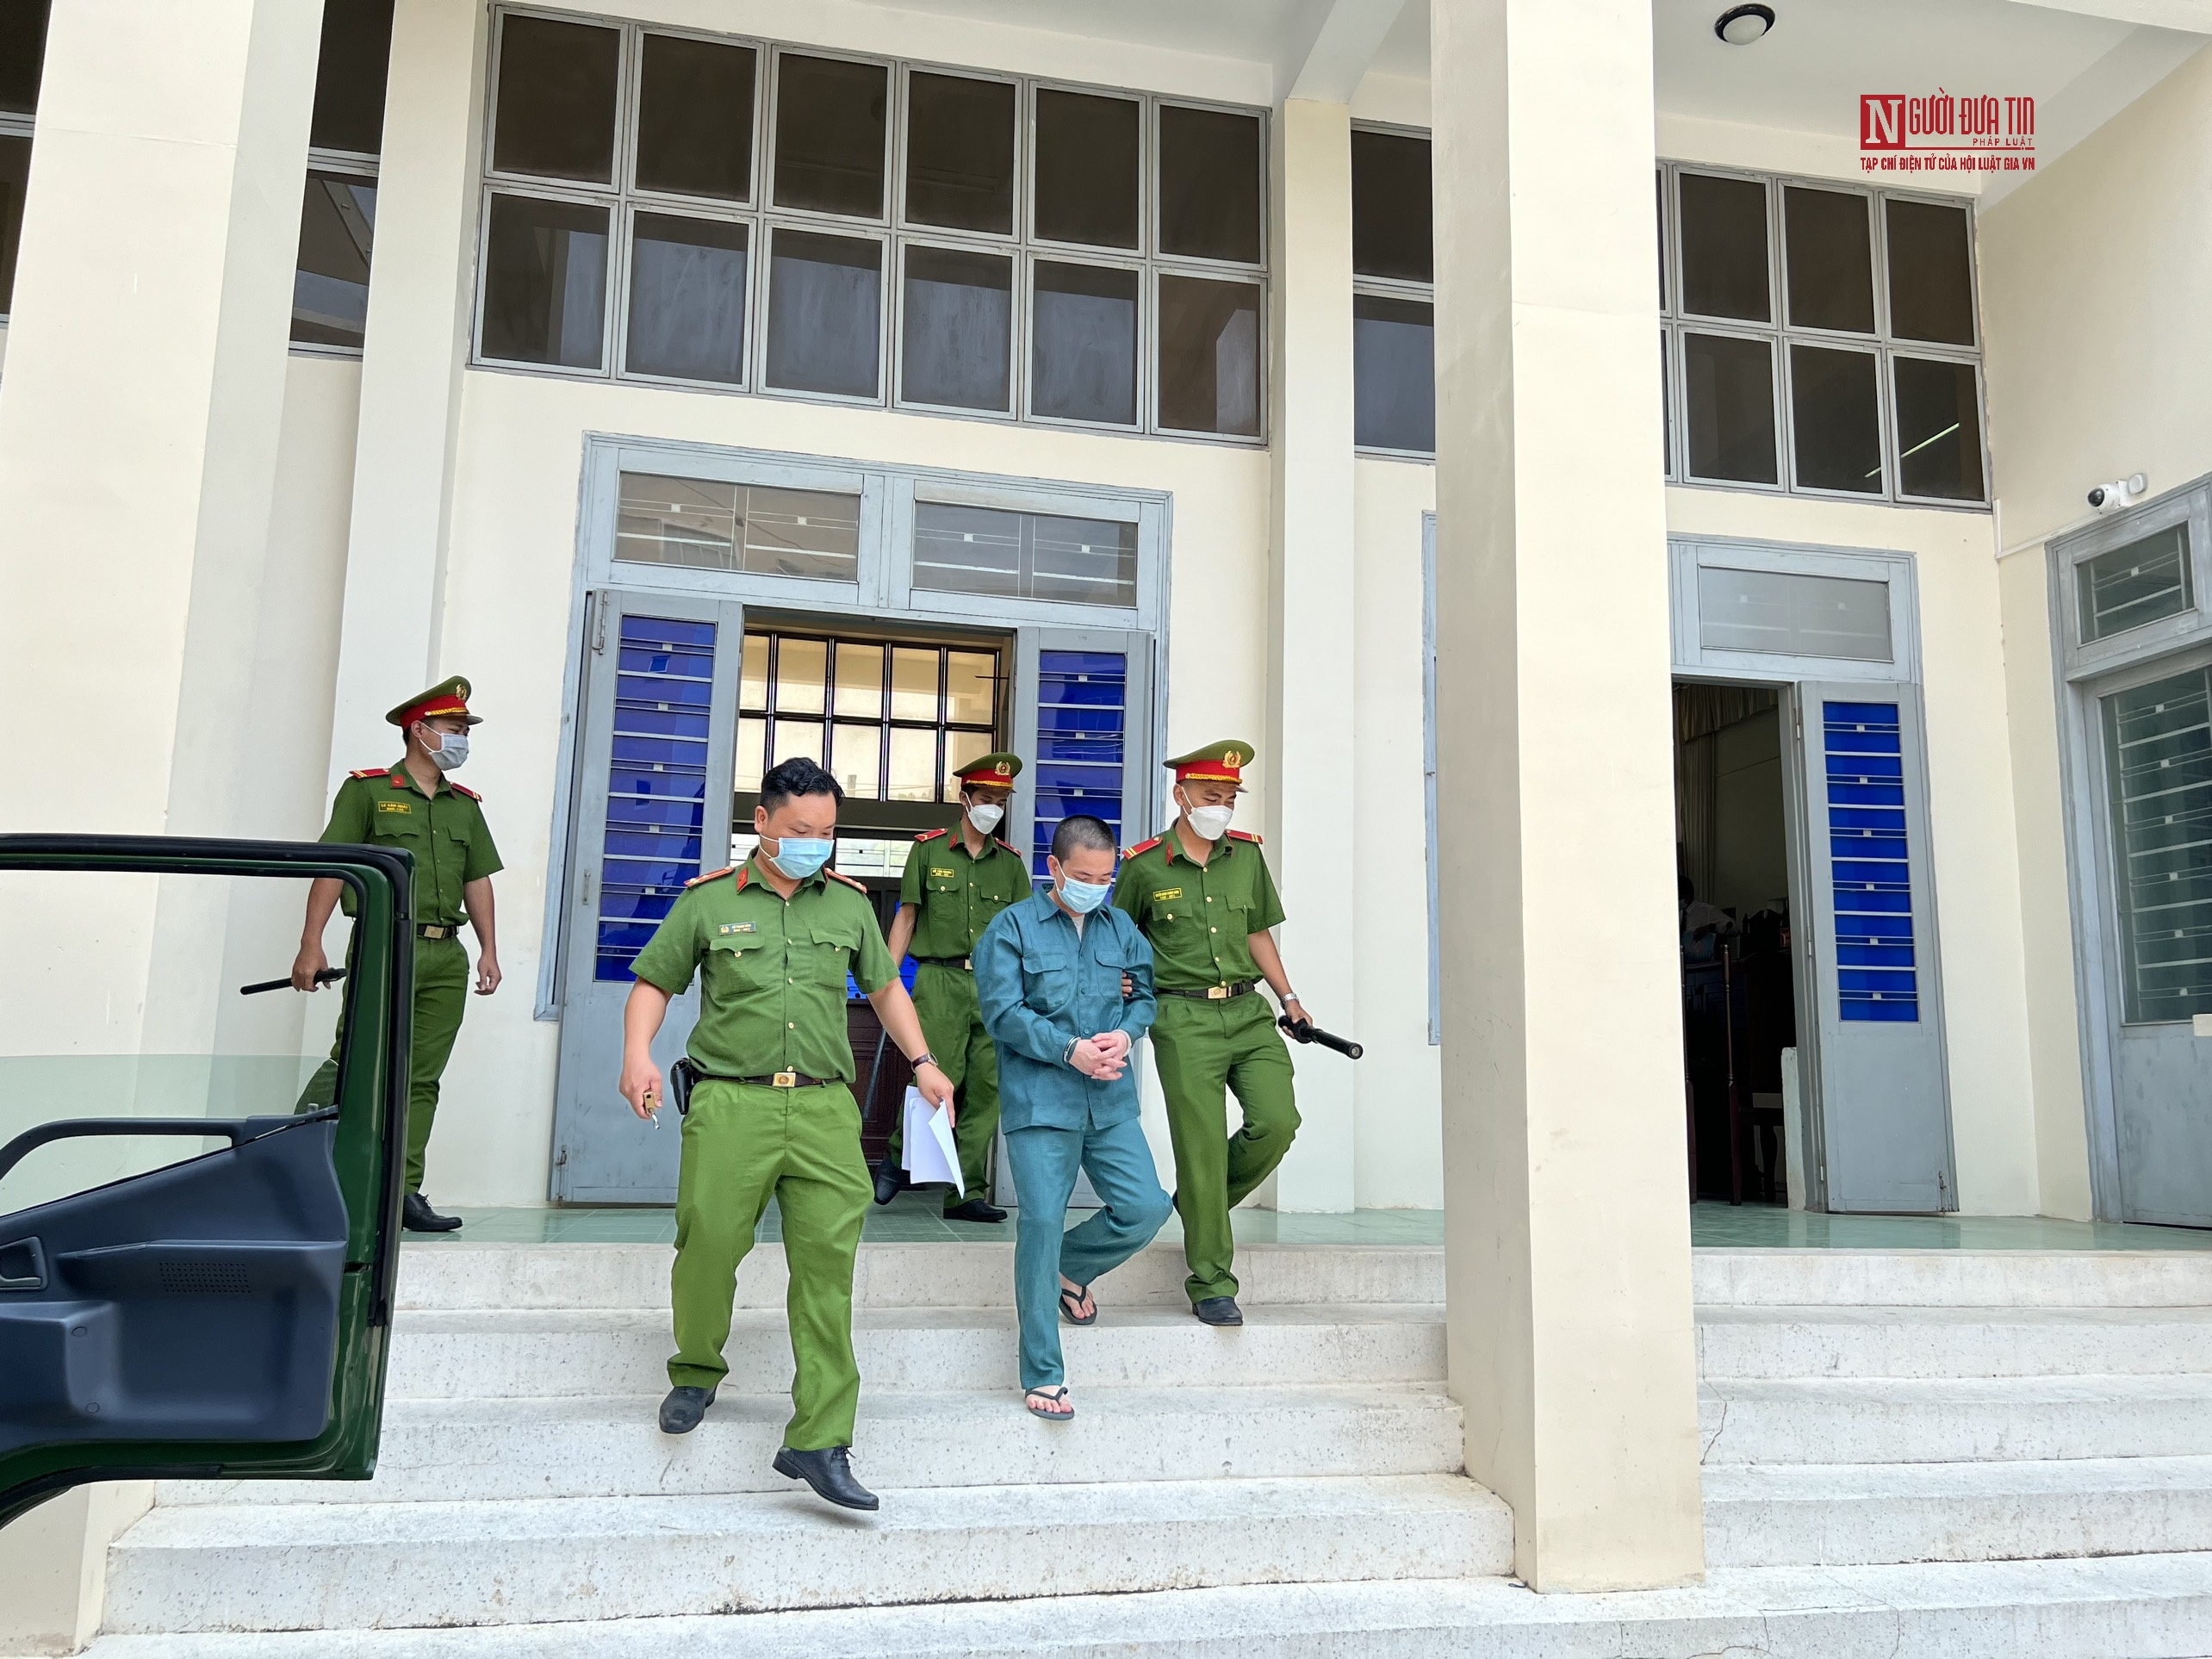 Hồ sơ điều tra - Bình Thuận: Đối tượng dùng kéo làm cá đâm chết người lãnh án tù (Hình 3).